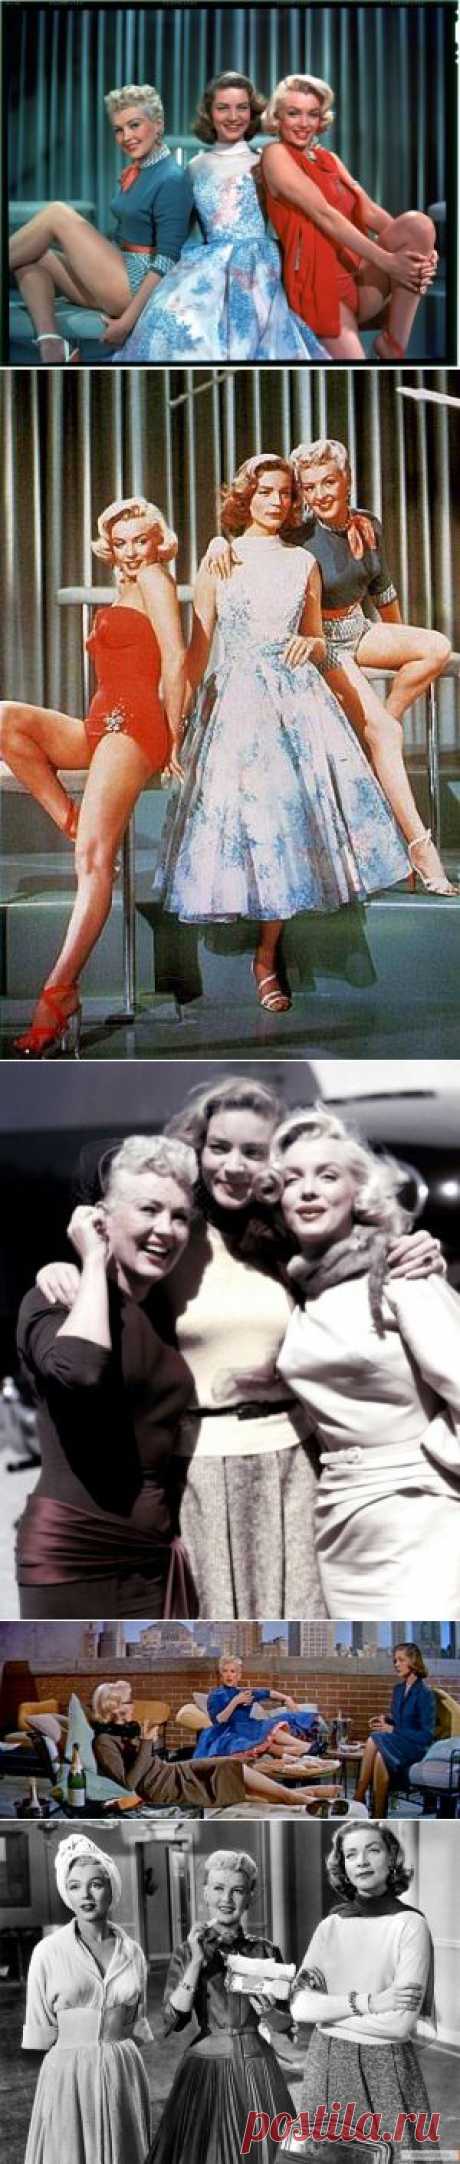 Мэрилин Монро, Бетти Грейбл и Лорен Бэколл в фильме «Как выйти замуж за миллионера», 1953 год. | Ностальгический клуб любителей кино .